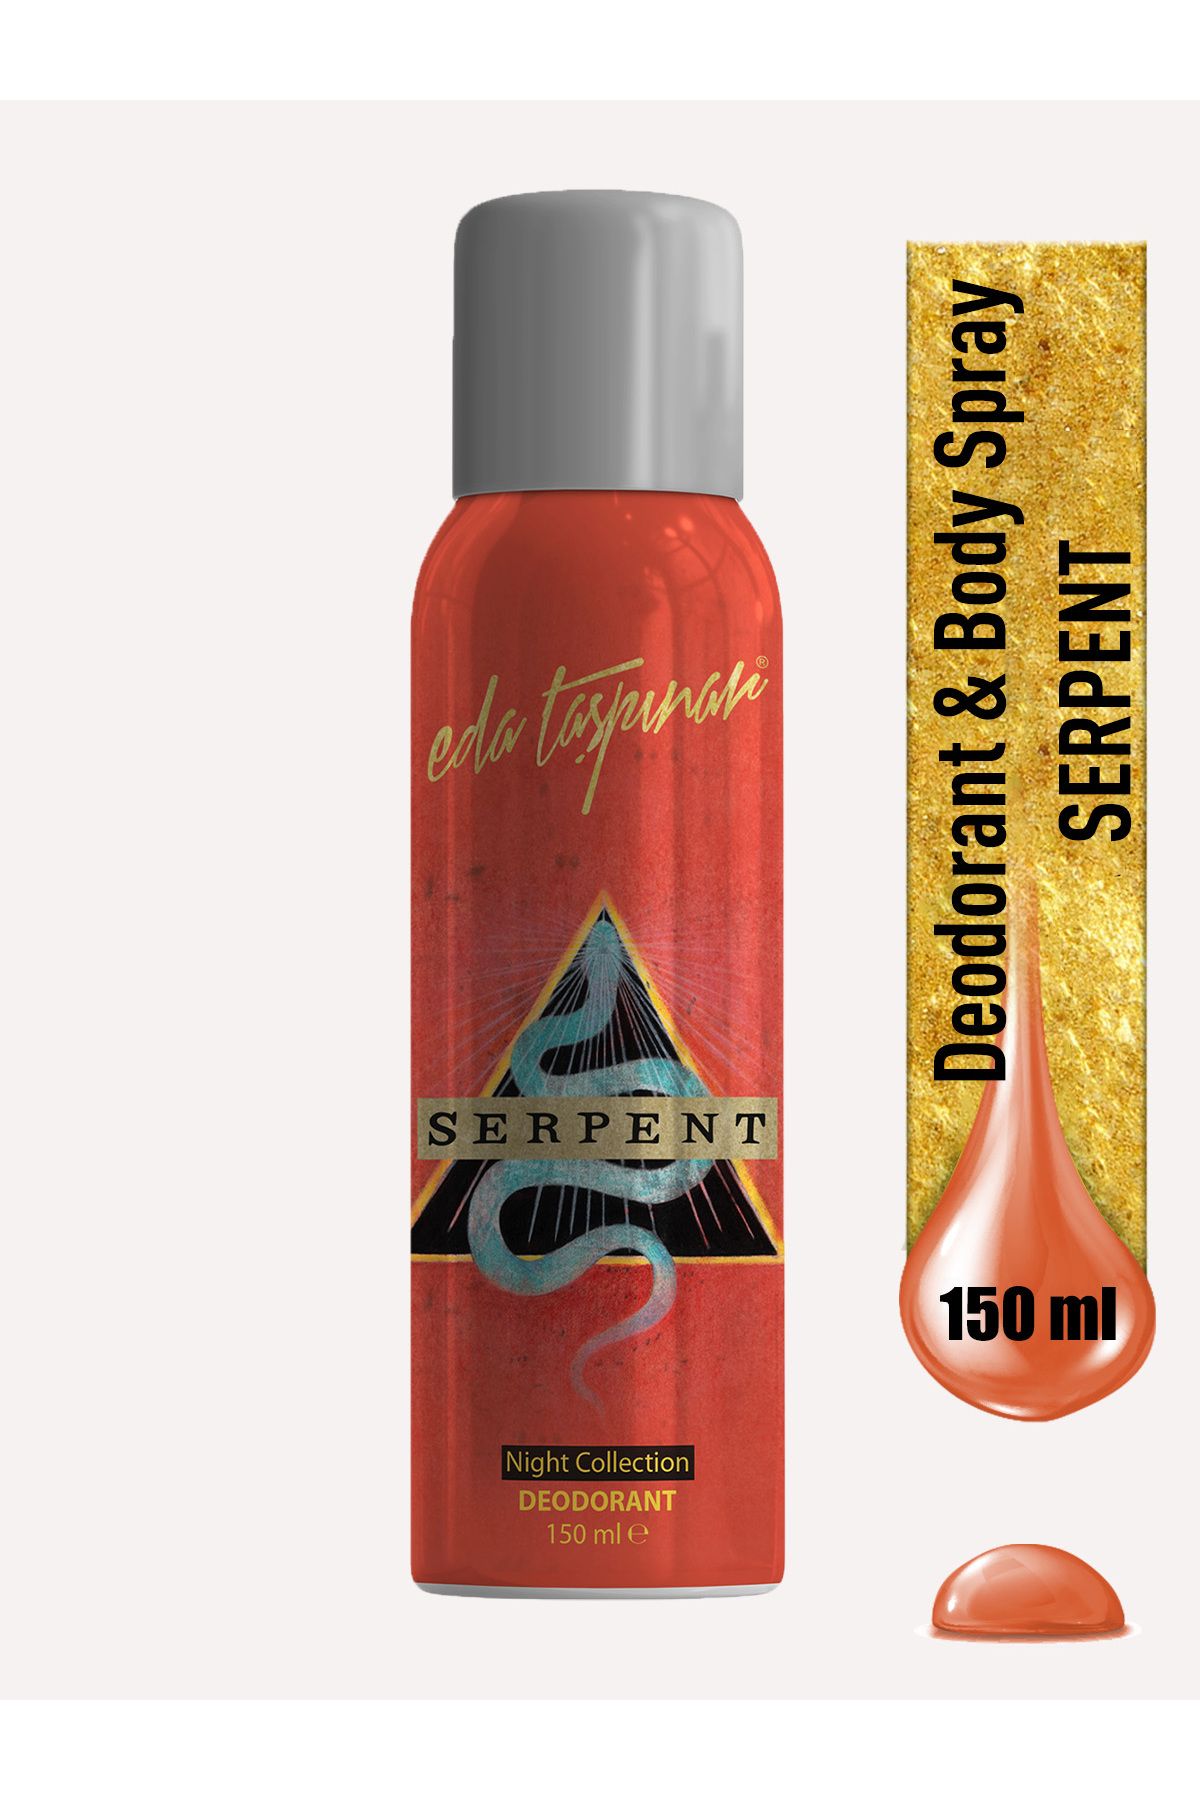 Eda Taşpınar Serpent Kadın Deodorant - 150 ml